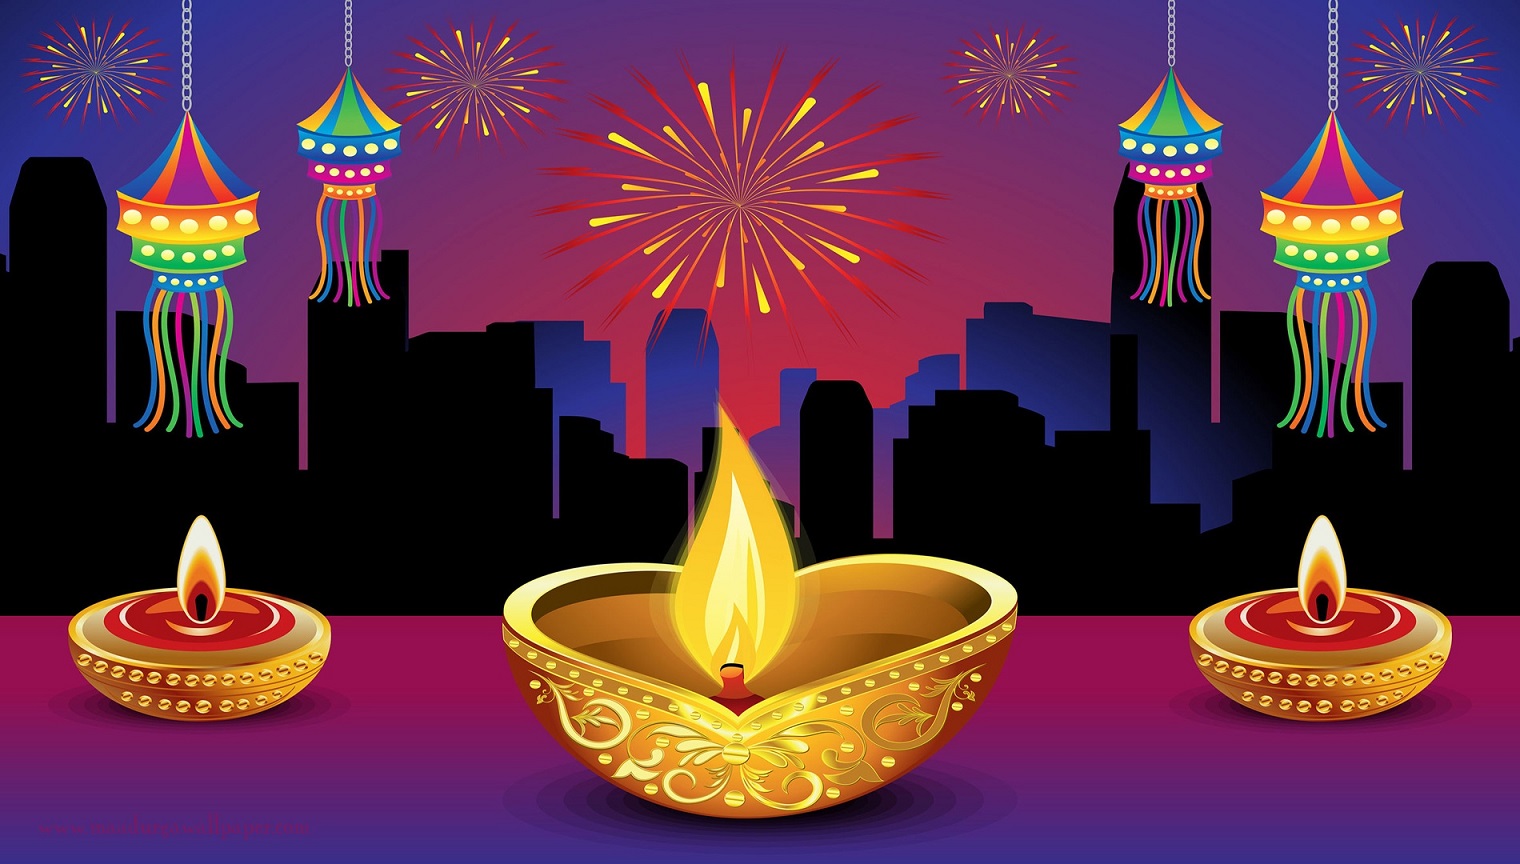 pradushan rahit diwali essay in hindi